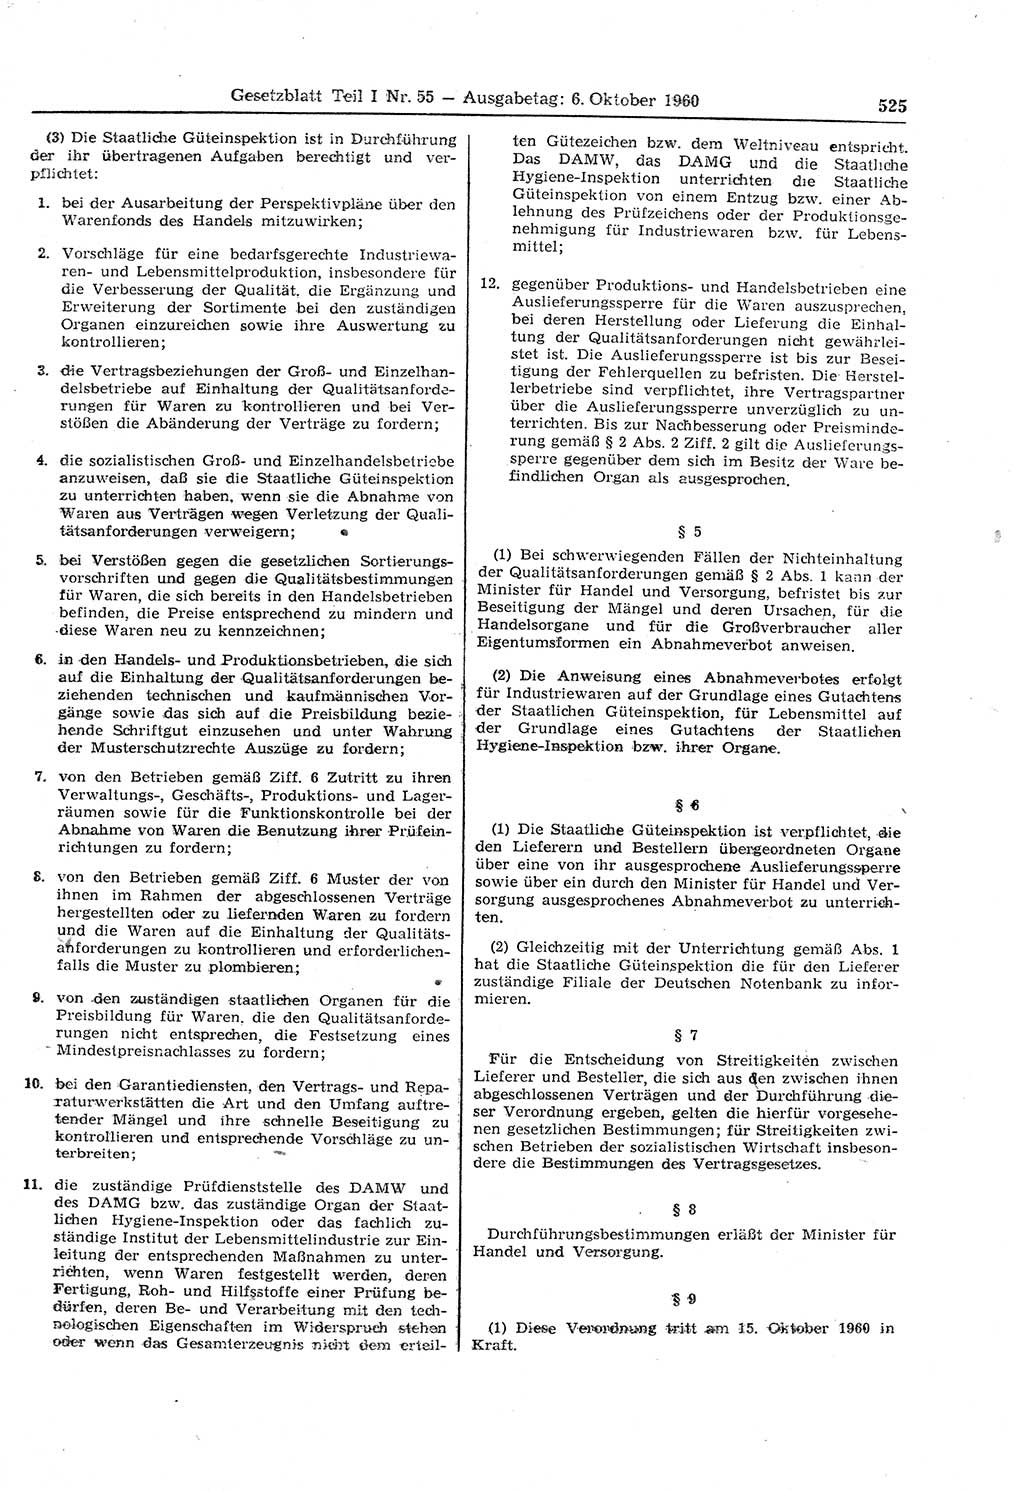 Gesetzblatt (GBl.) der Deutschen Demokratischen Republik (DDR) Teil Ⅰ 1960, Seite 525 (GBl. DDR Ⅰ 1960, S. 525)